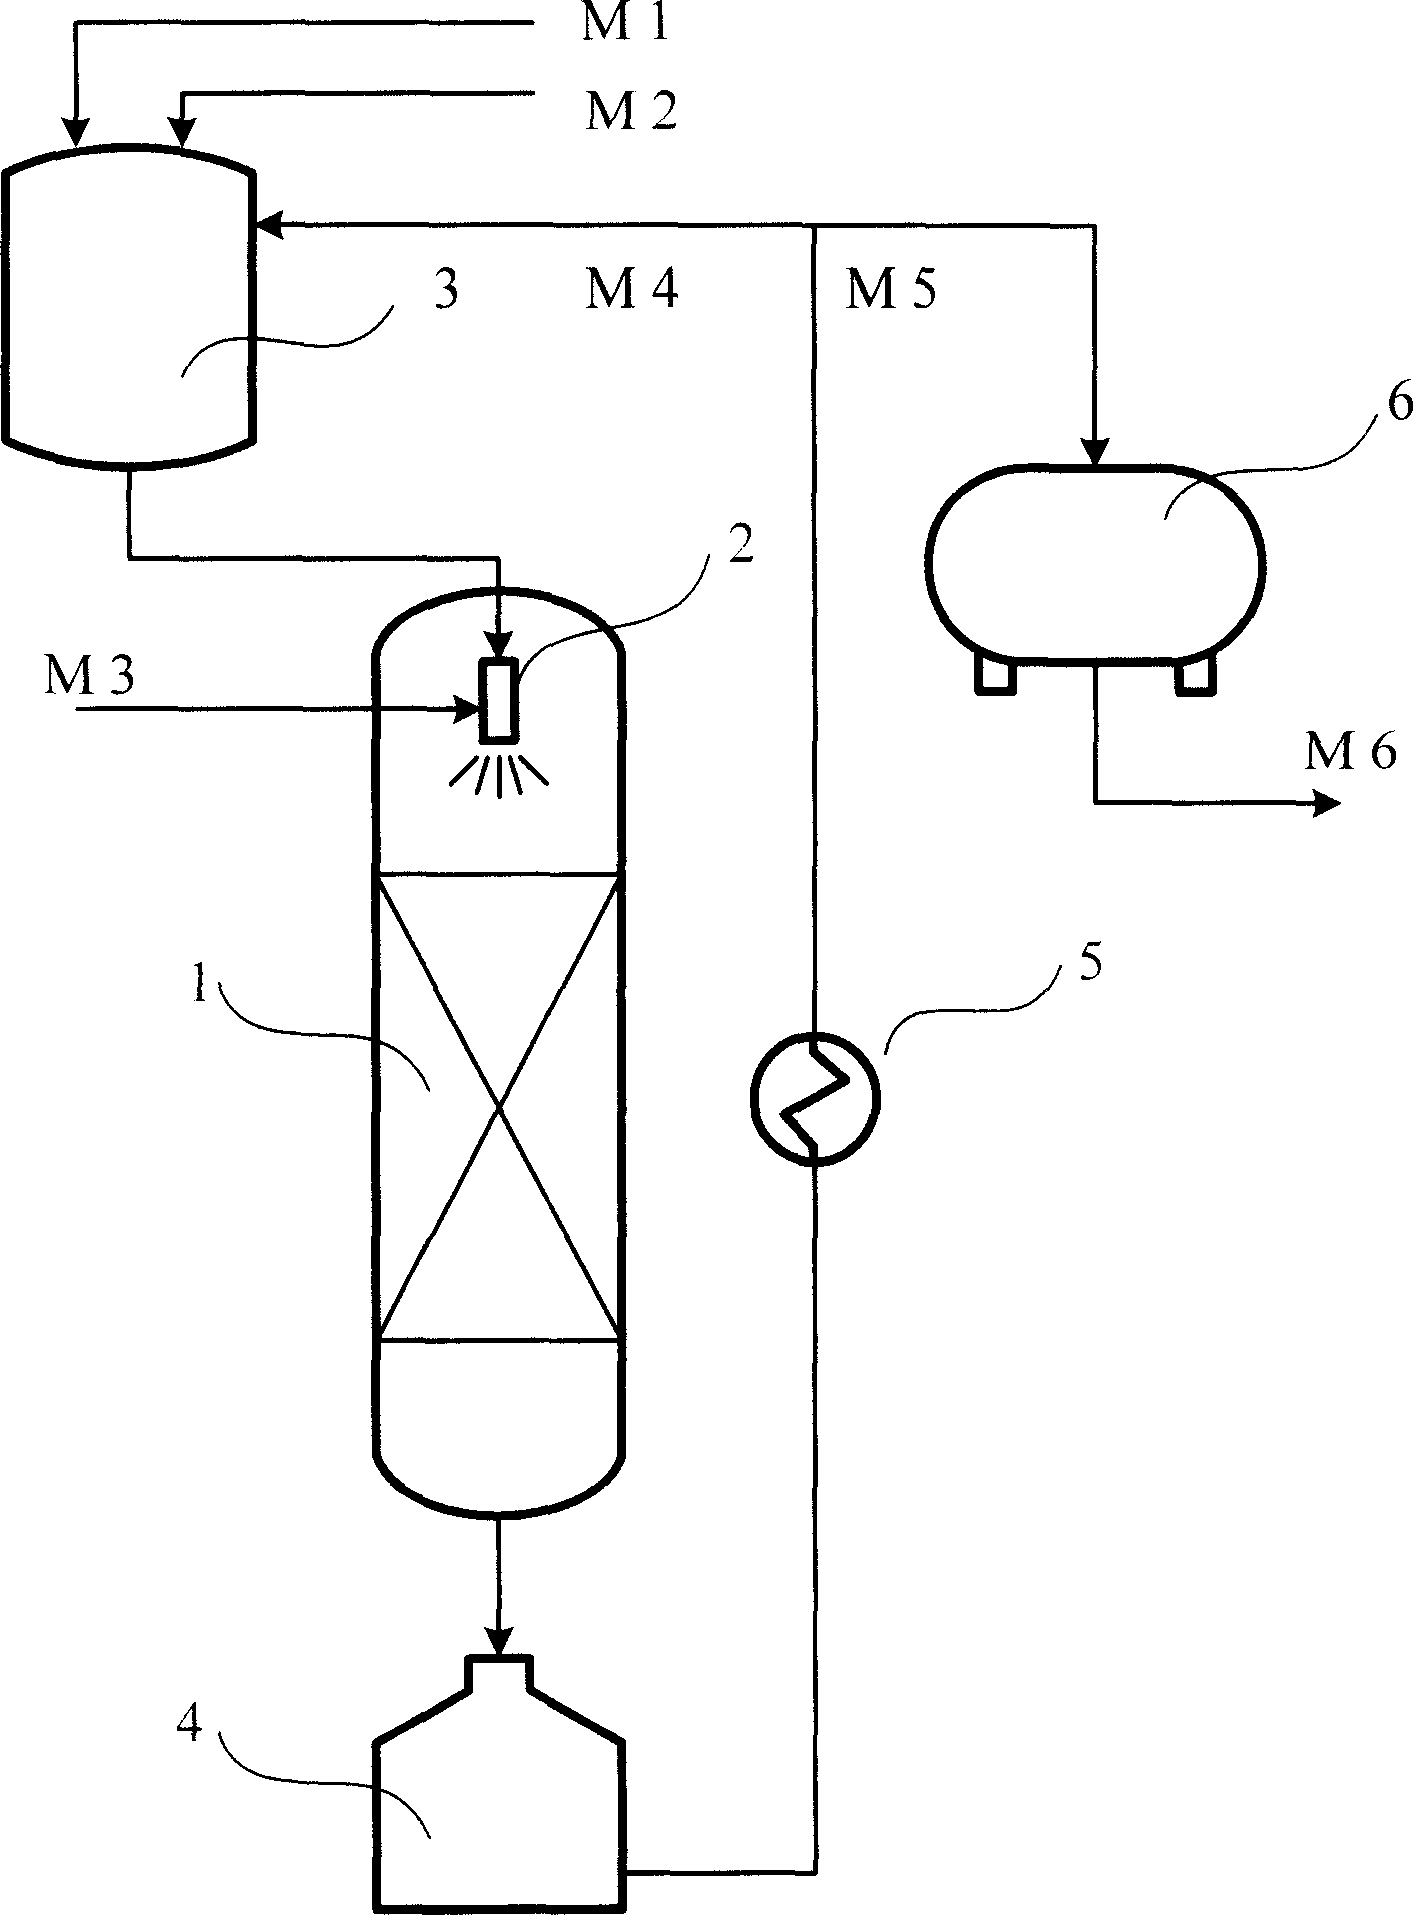 Method of preparing methyl cyclo penlene by continuous hydrogenation of methyl cyclo pentadiene